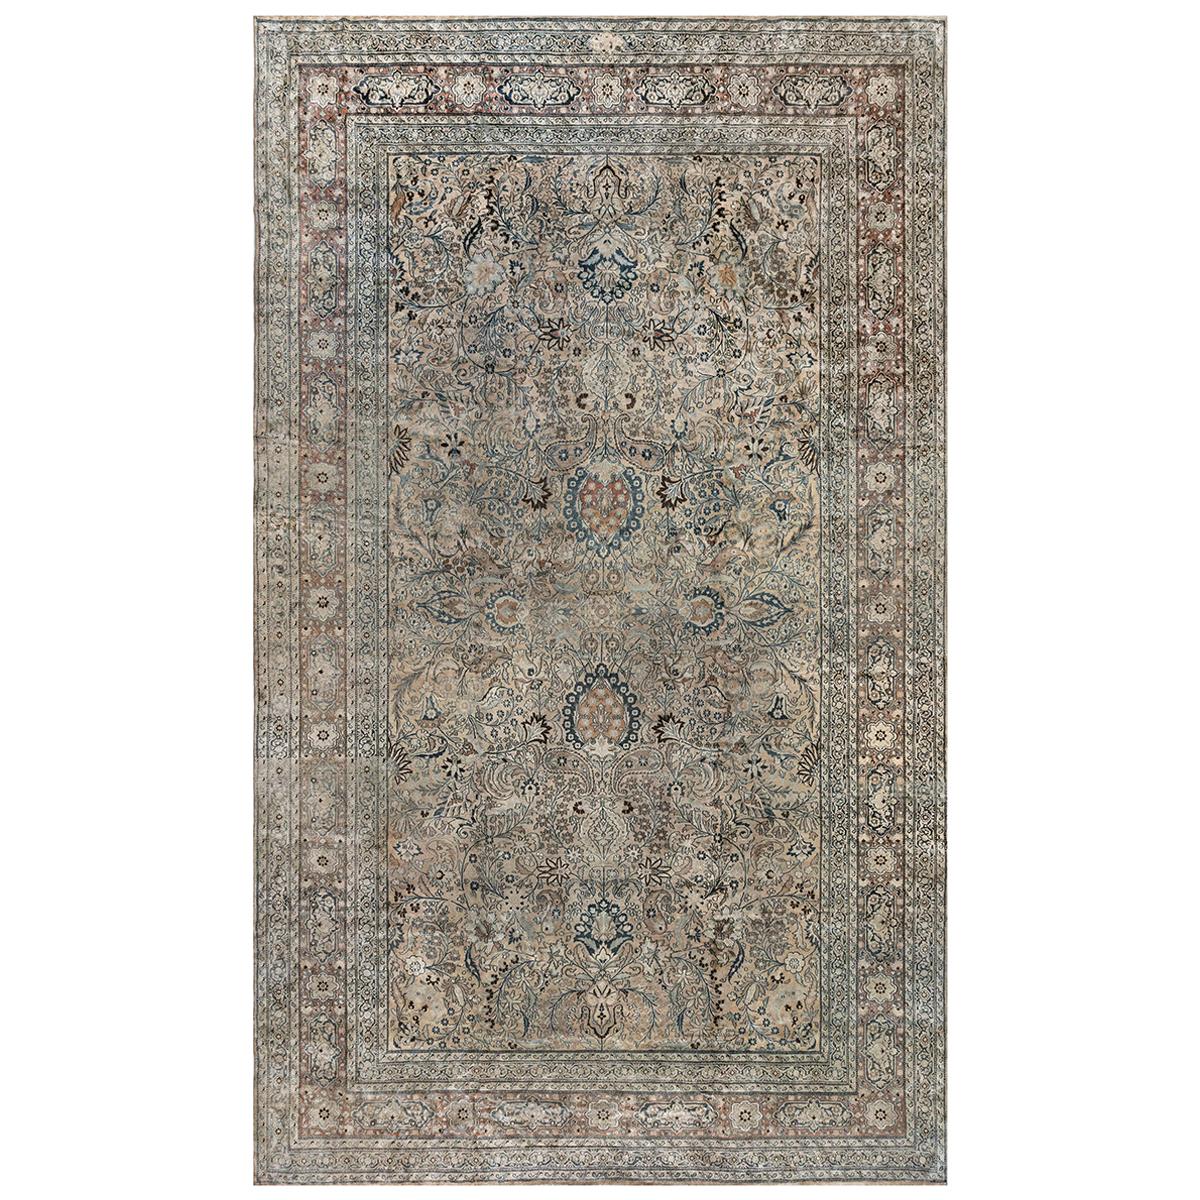 Authentischer persischer Meshad-Teppich aus dem frühen 19. Jahrhundert